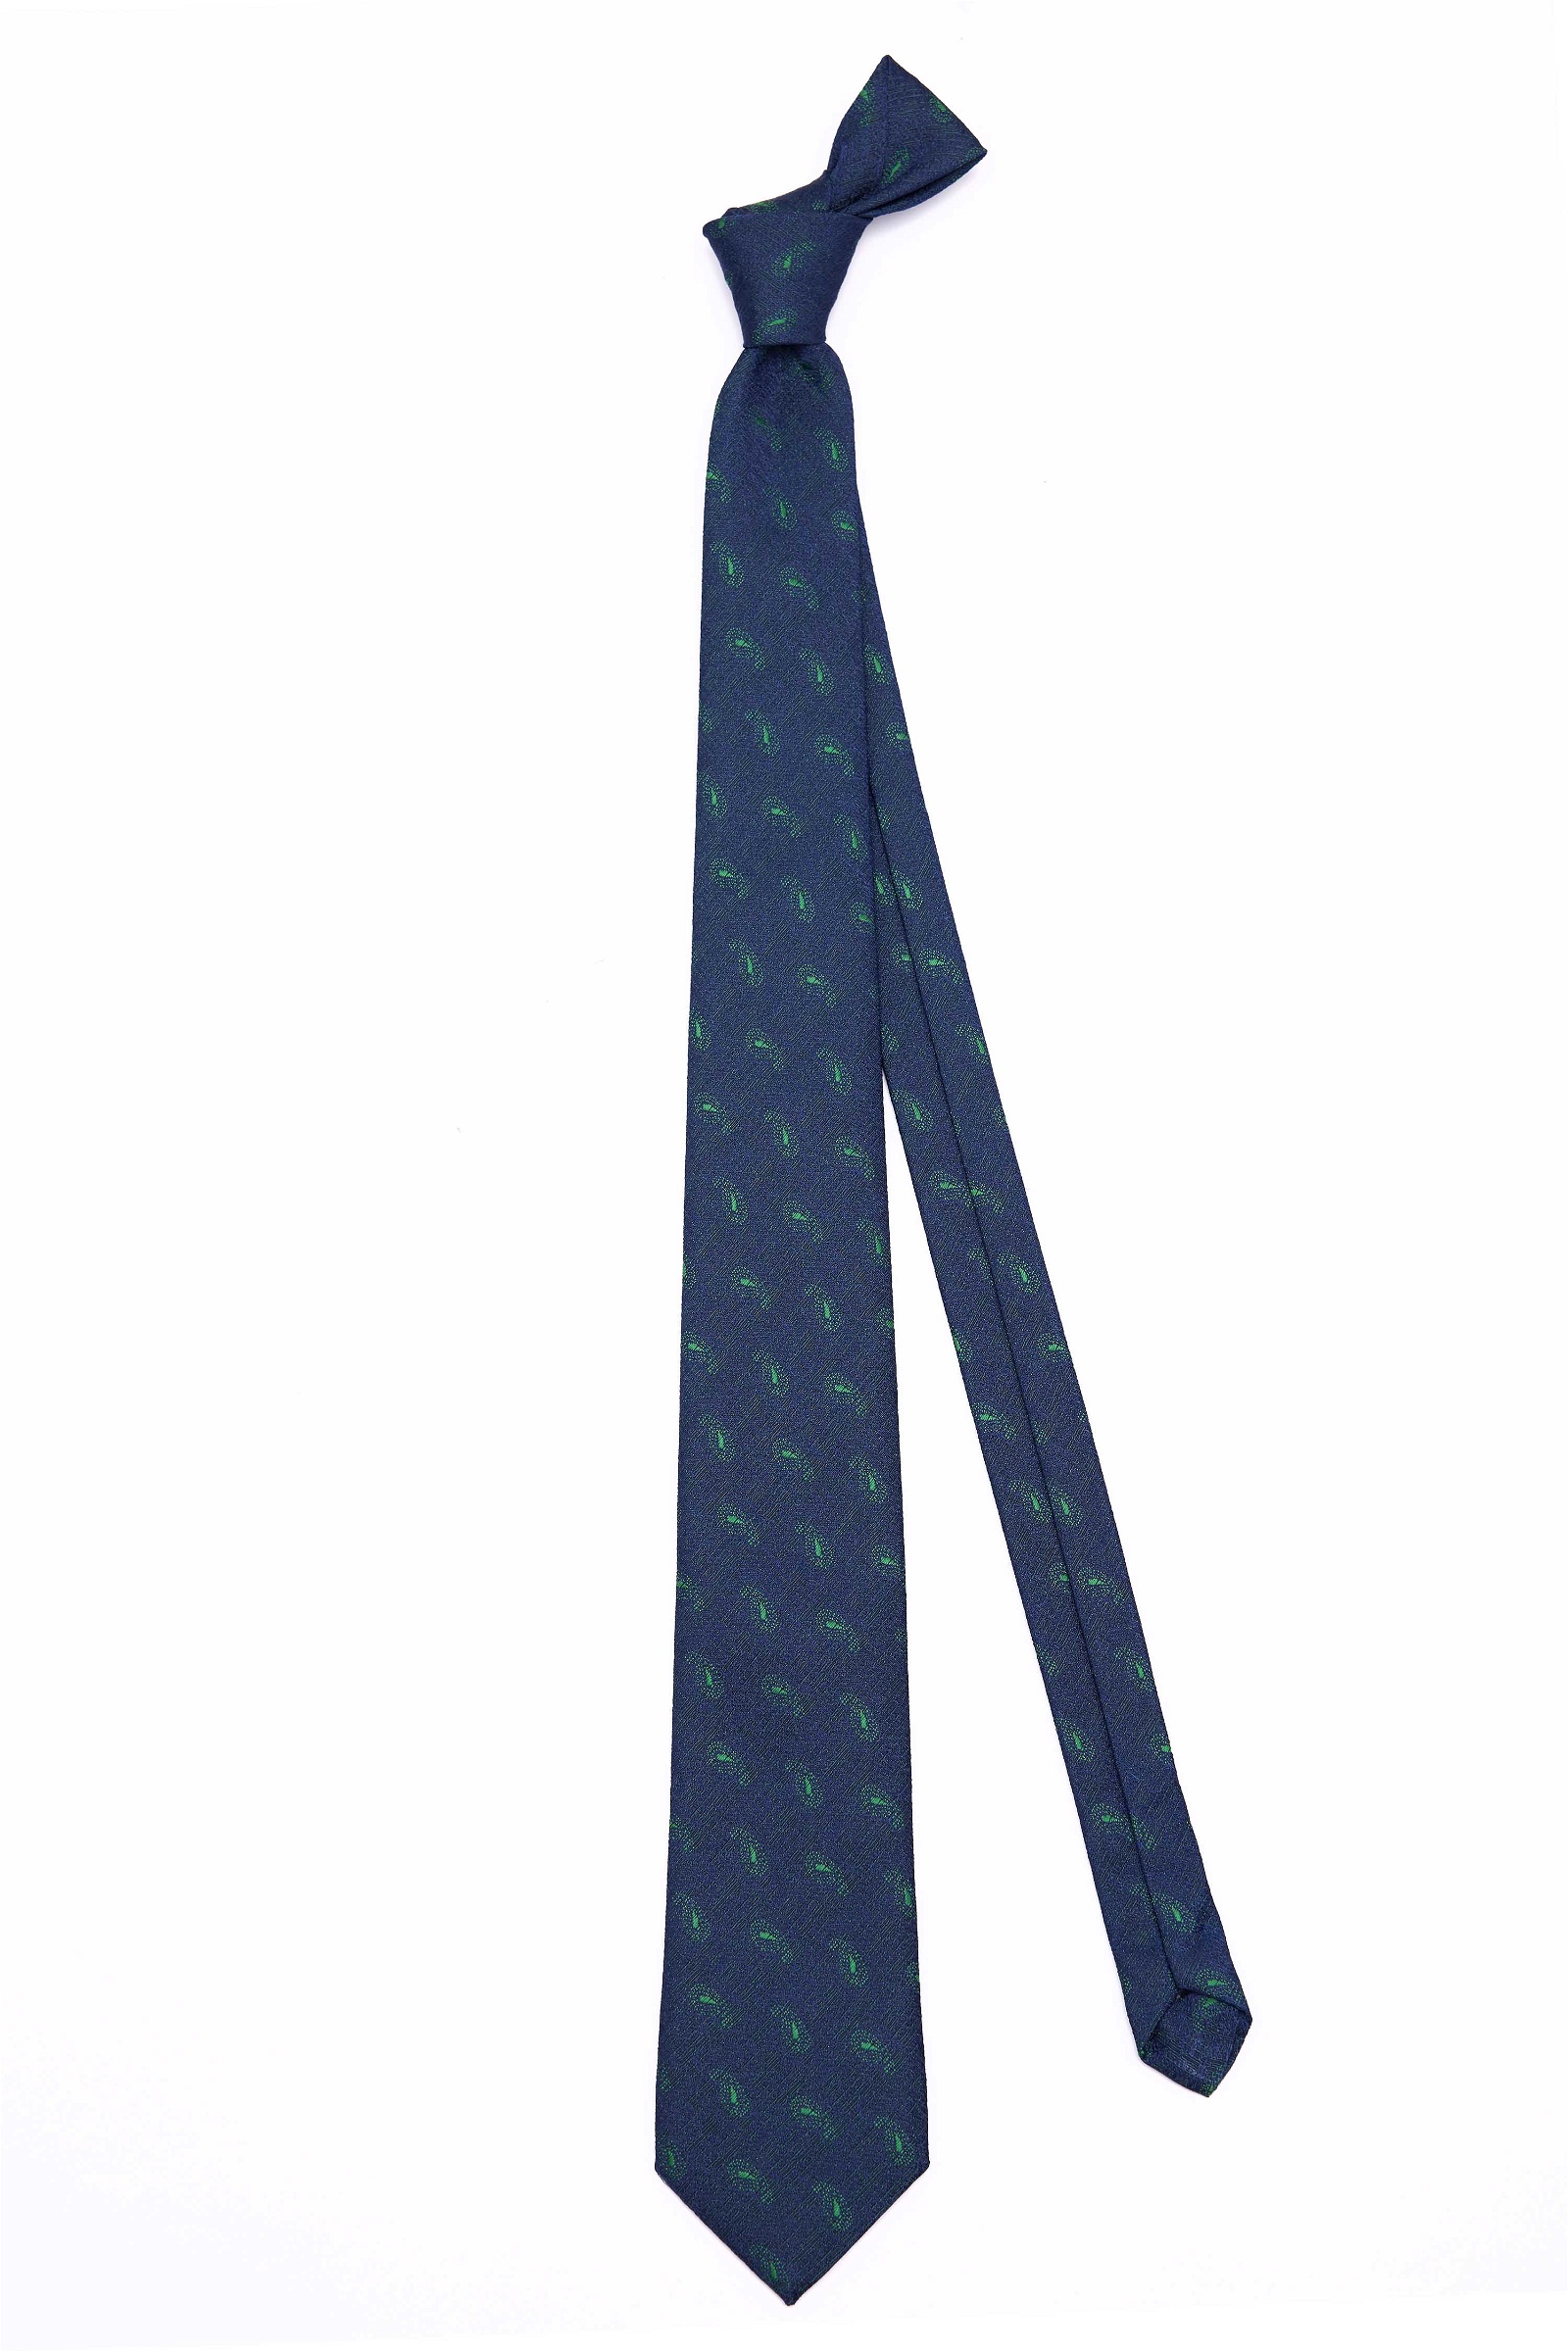   Nyakkendő